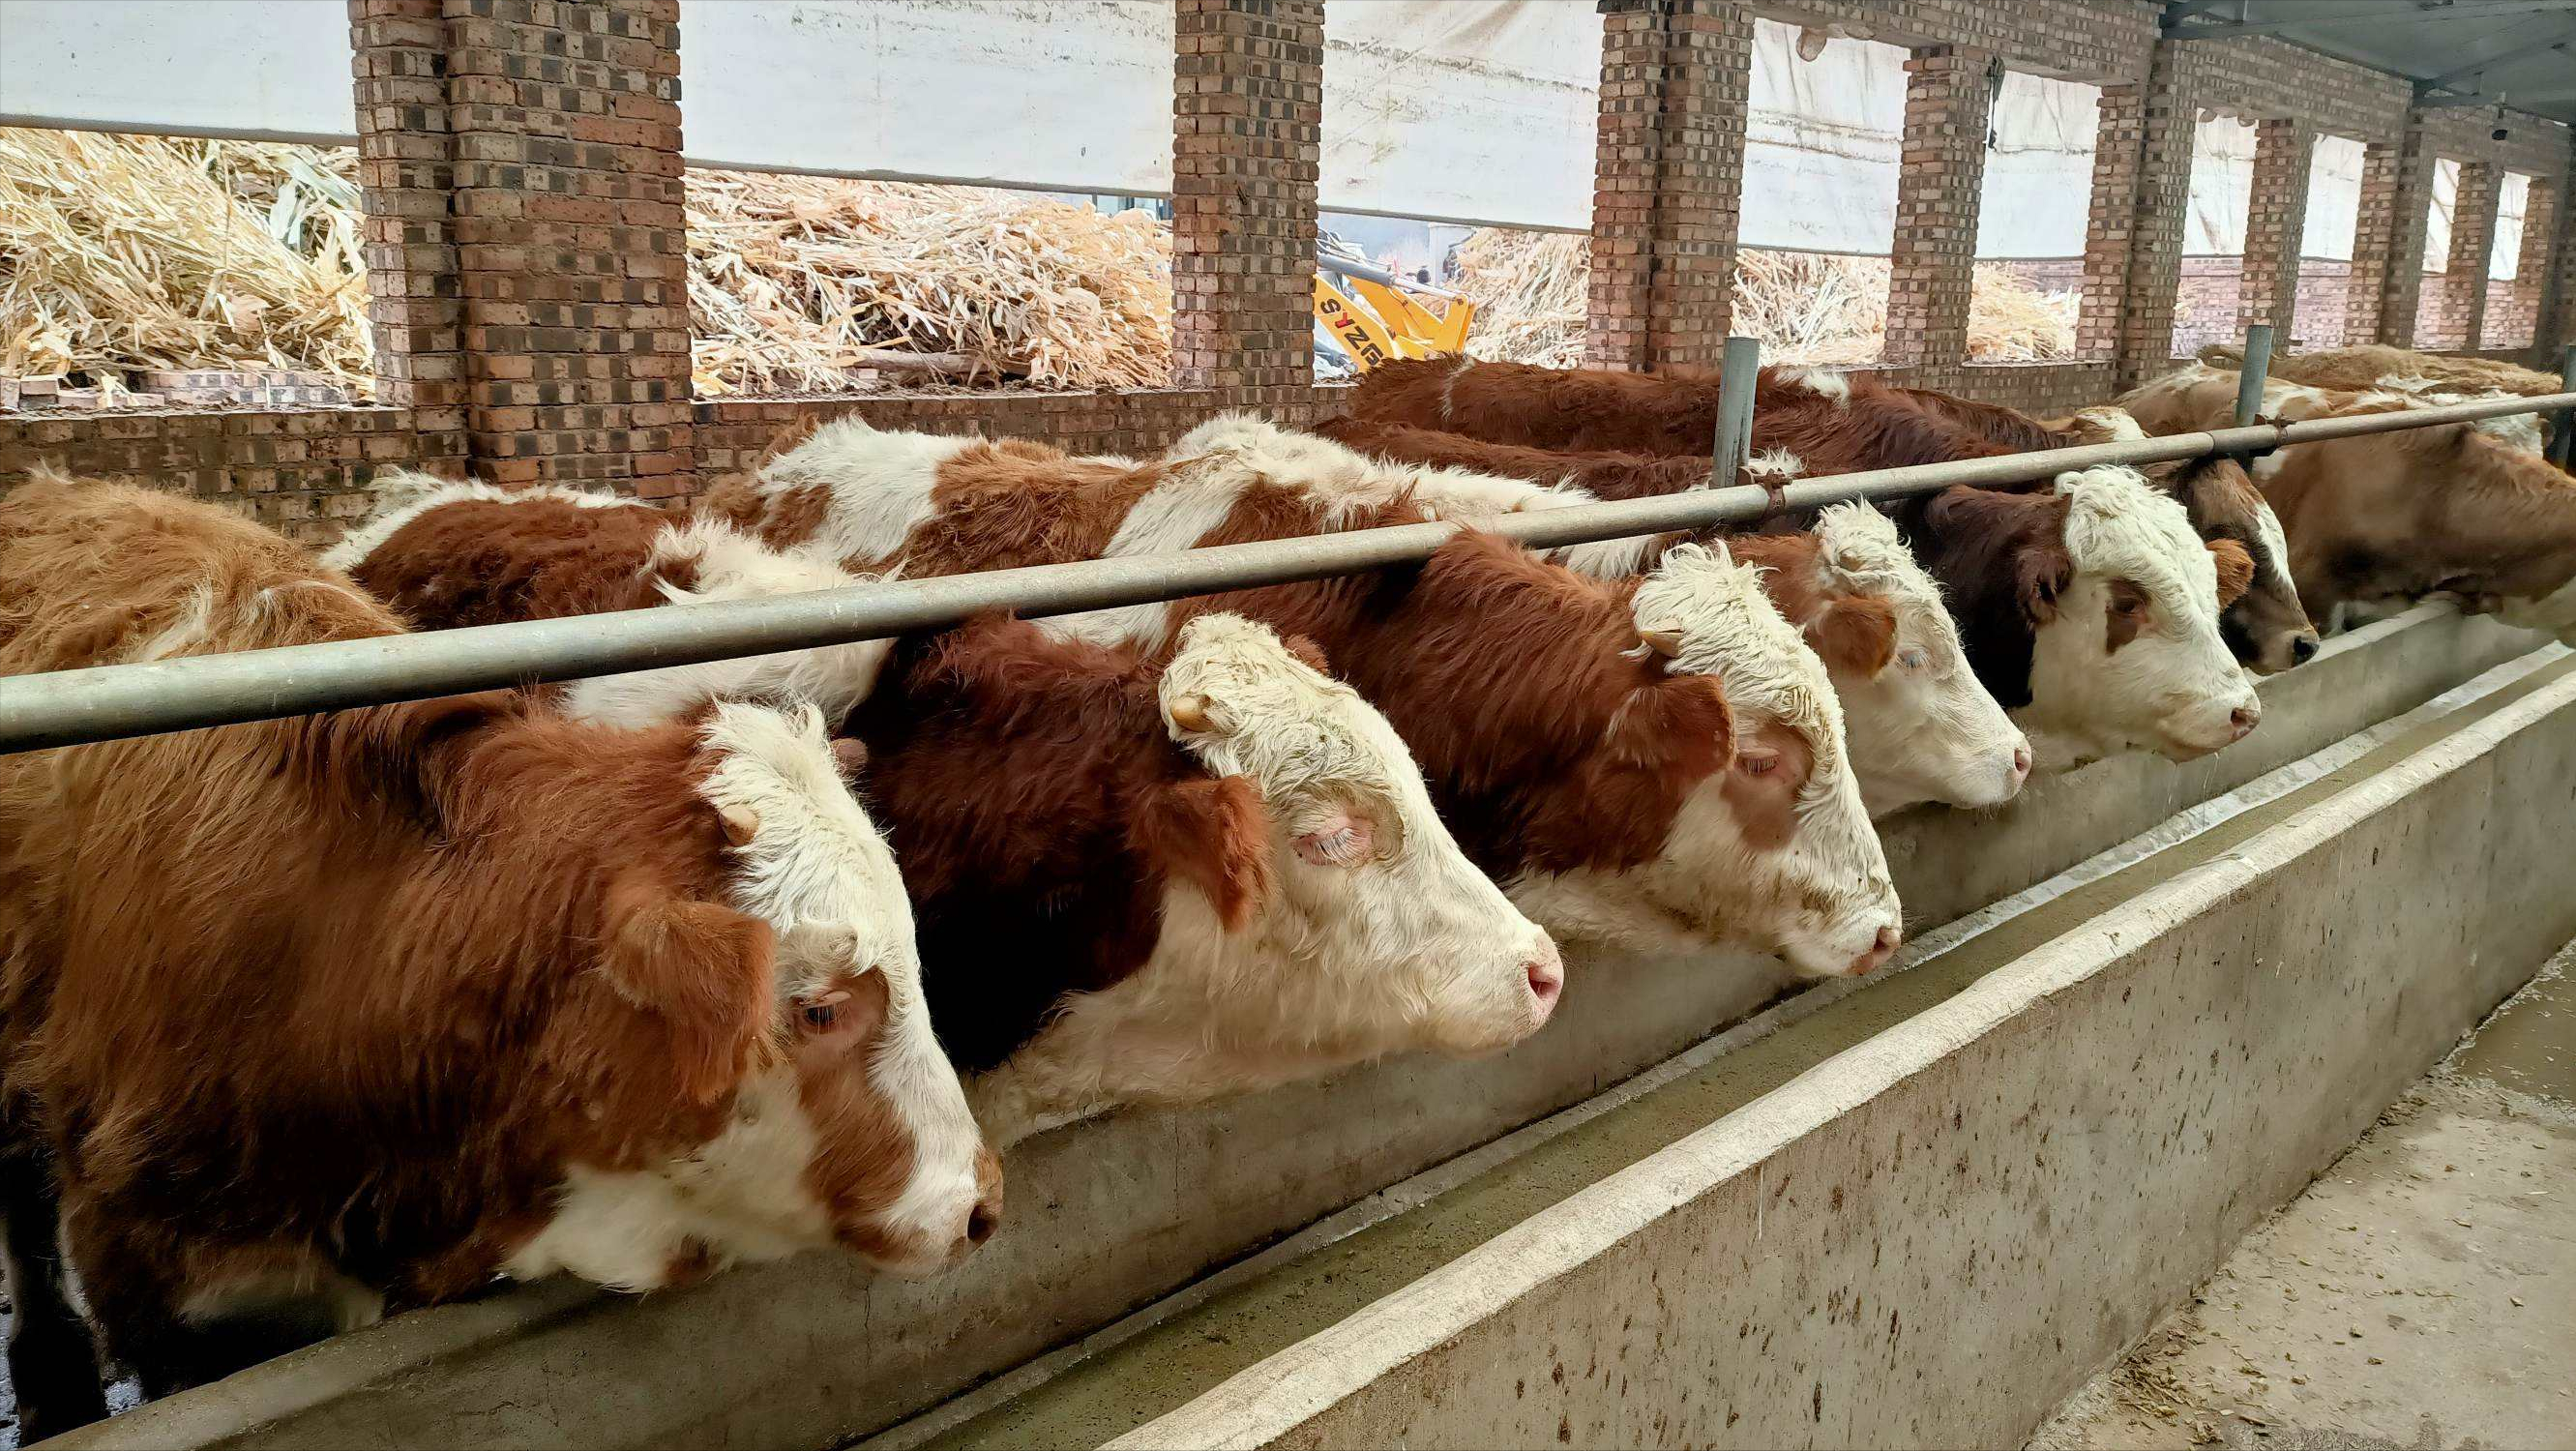 2010年上海女白领回老家养牛，卖牛粪赚千万，十年后一年赚1.6亿